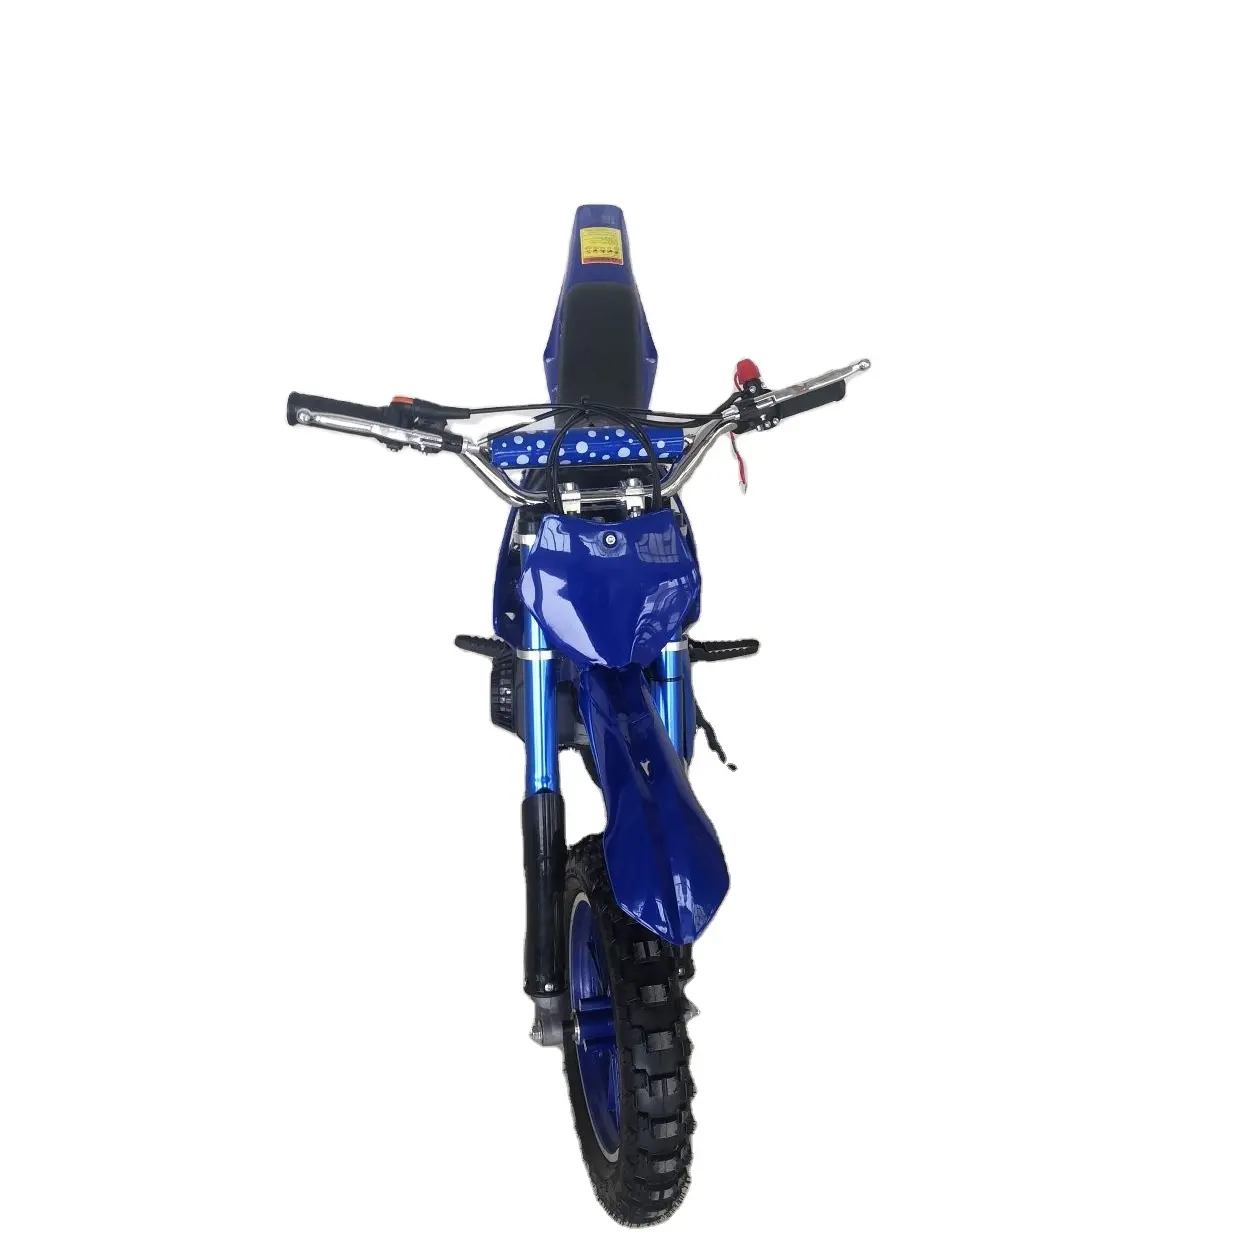 Neue Mode 2-Takt Mini Dirt Bikes Pull Start Gas Mini Motorrad 49cc für Kinder mit CE